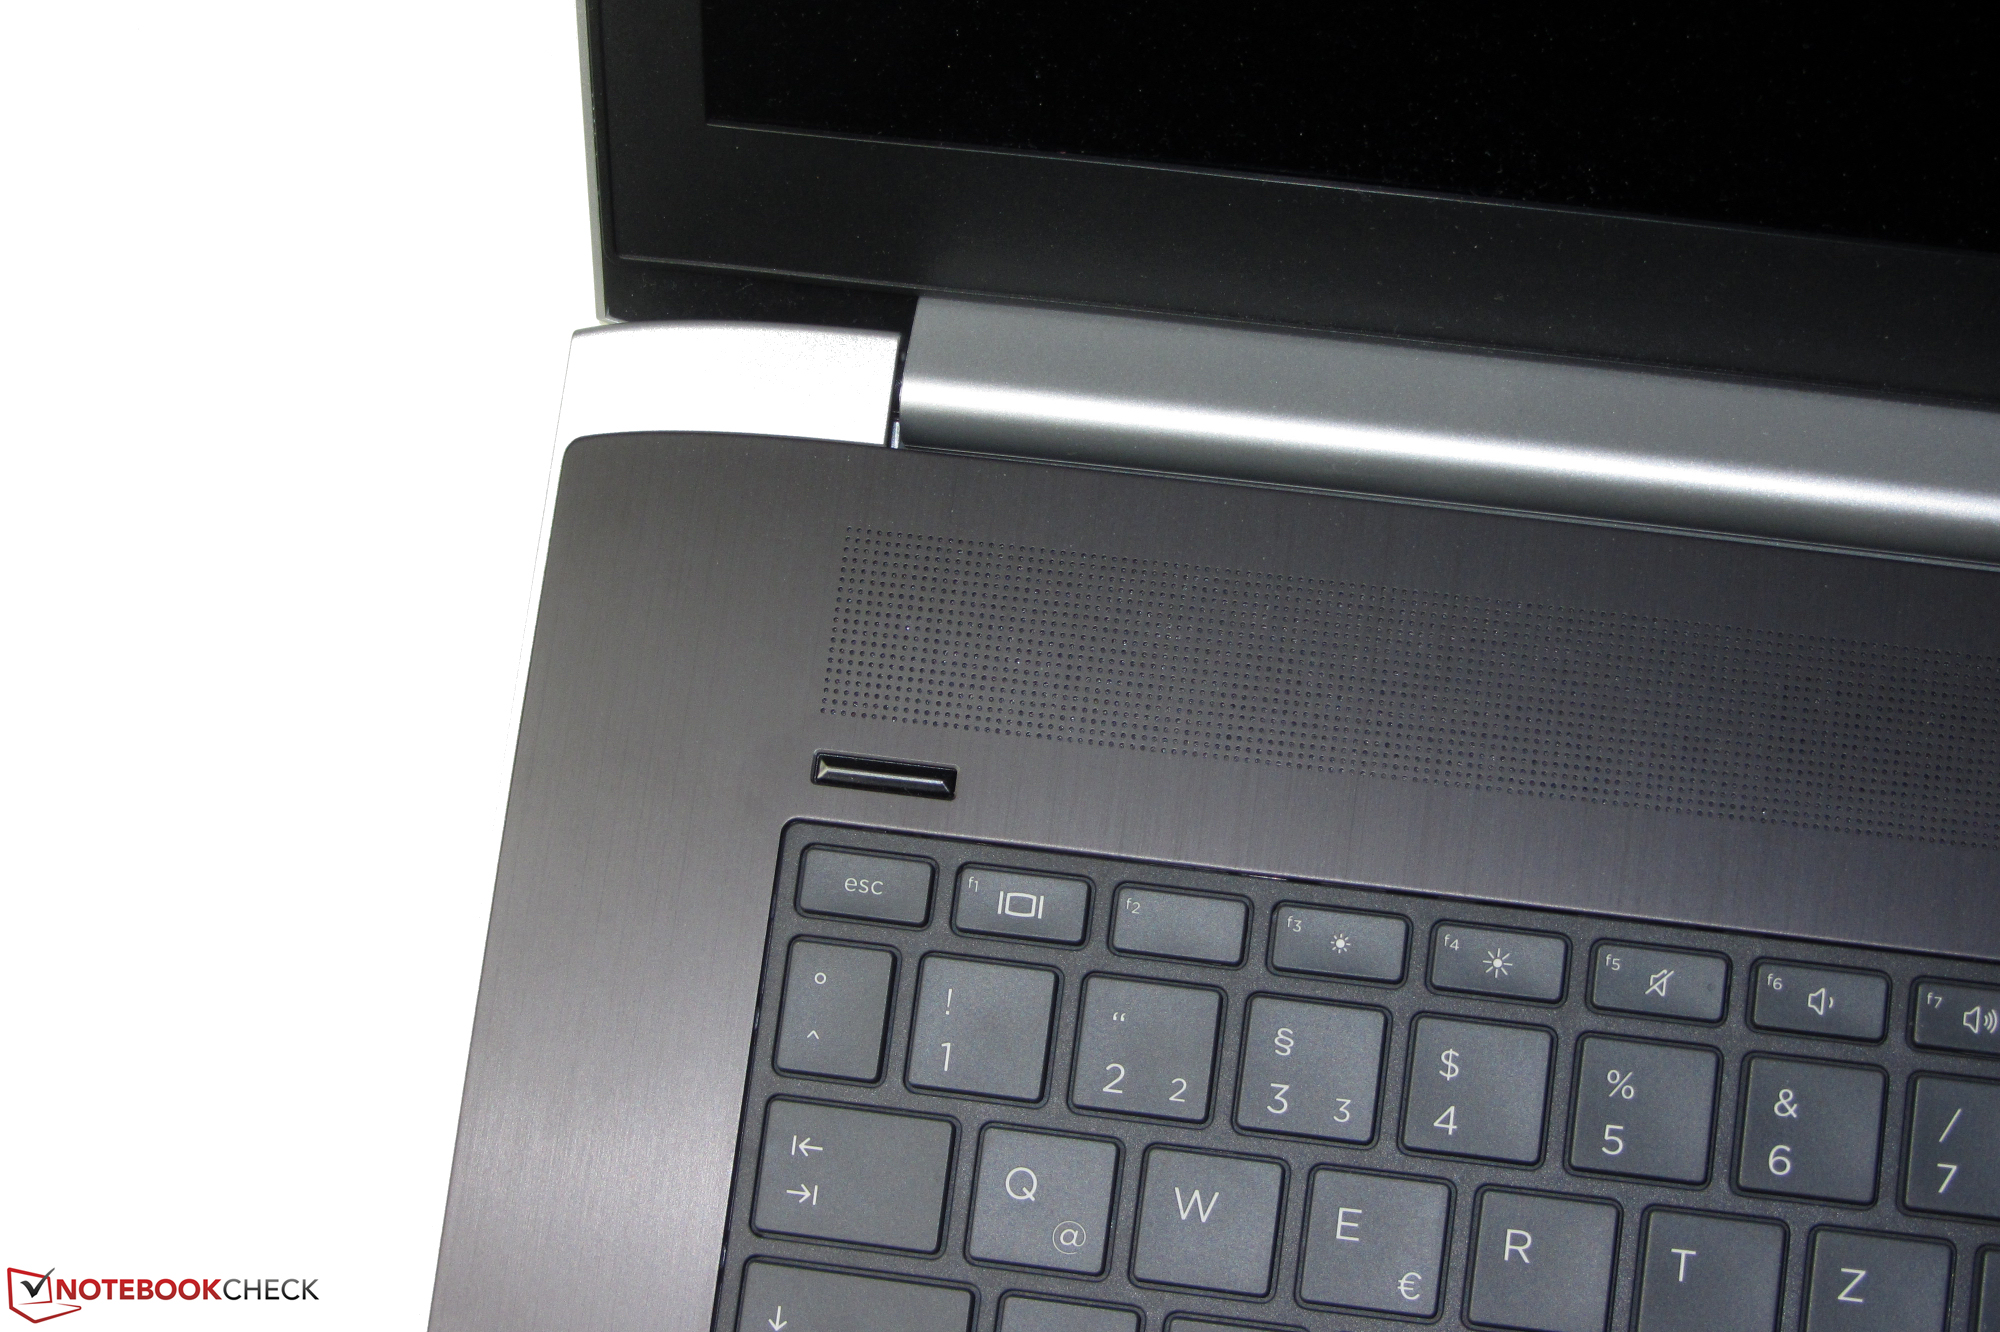 HP ProBook 470 G5 (i5-8250U, 930MX, SSD, FHD) Laptop Review -  NotebookCheck.net Reviews